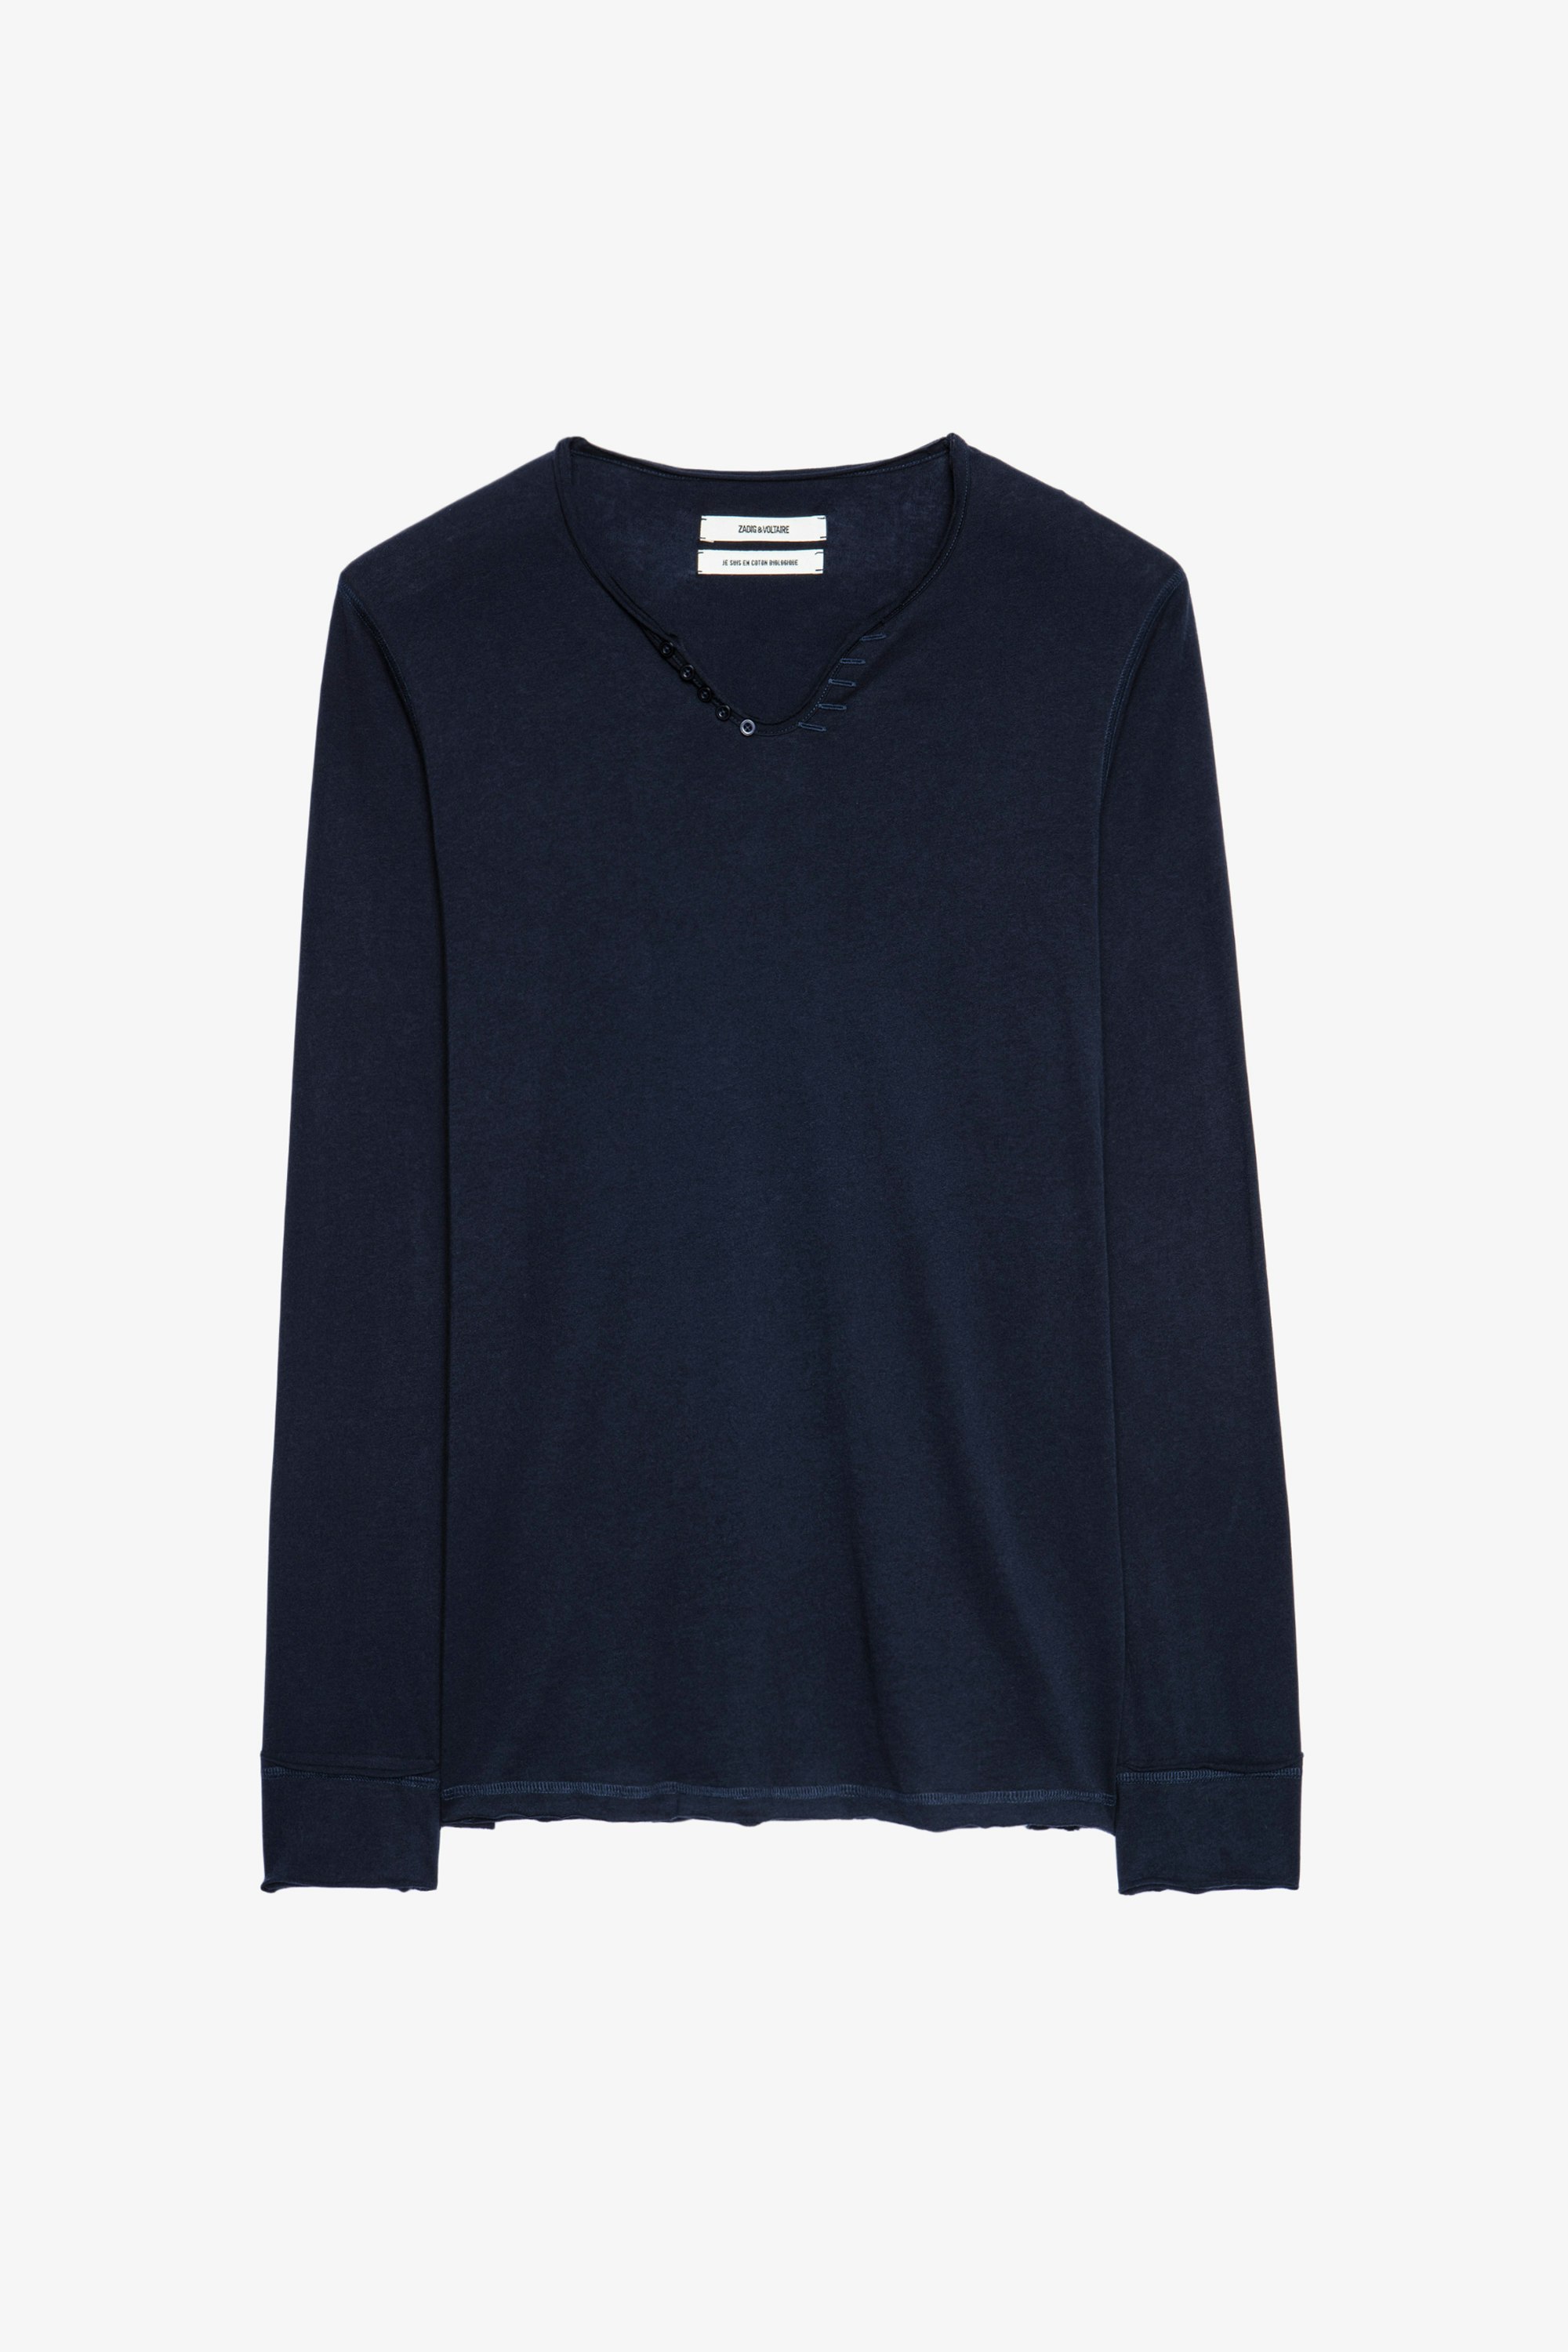 Henley-T-Shirt Monastir - Blaues Herren-T-shirt aus Baumwolle mit Henley-Ausschnitt